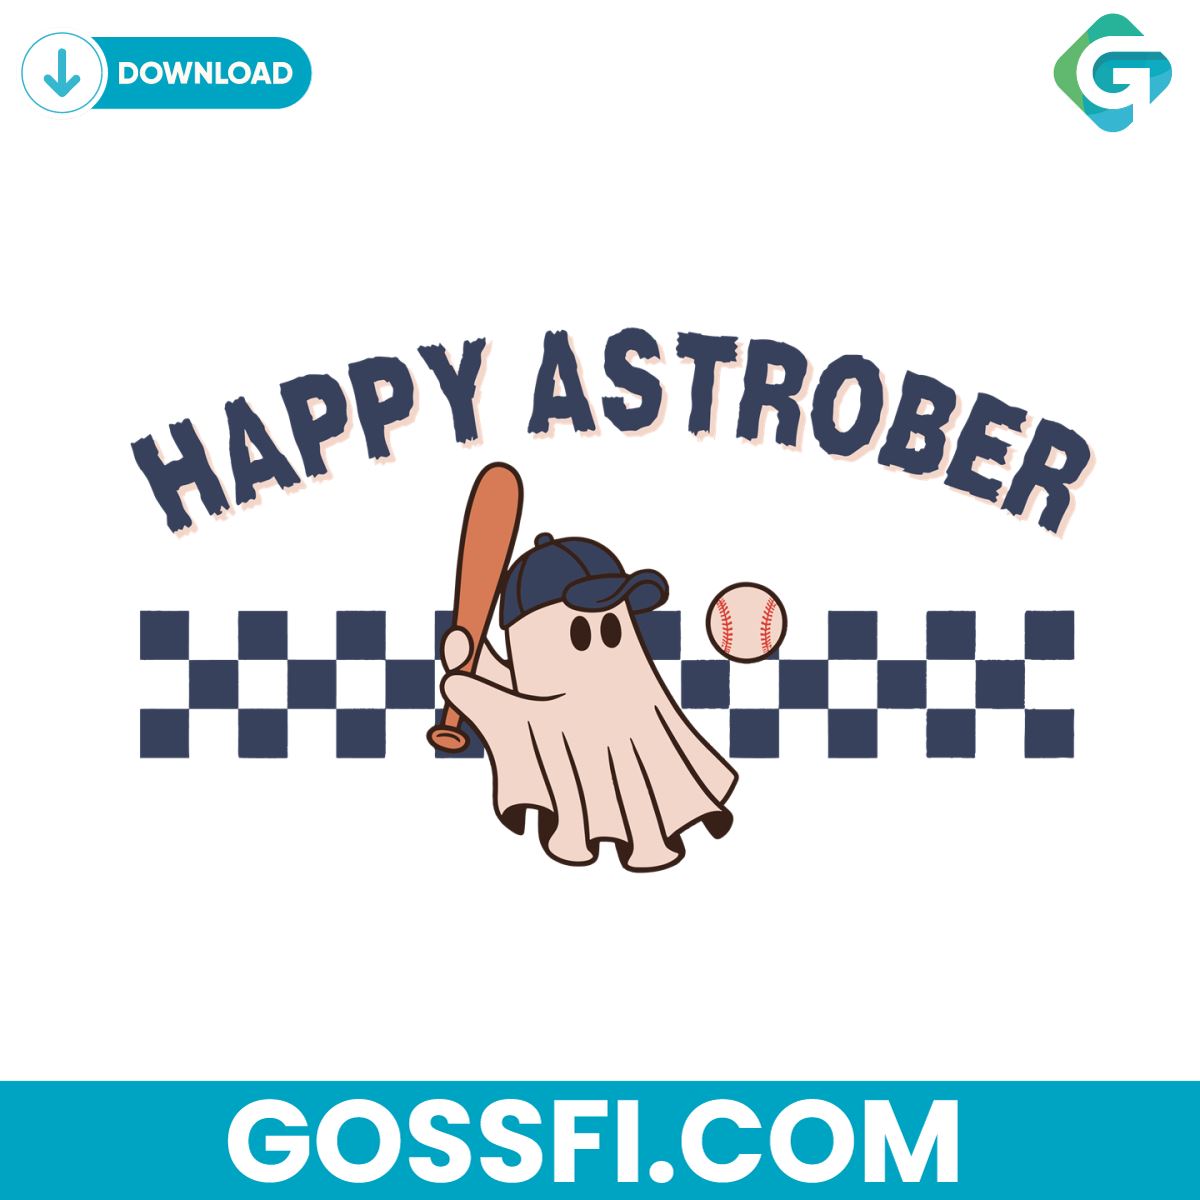 happy-astrober-astros-postseason-mlb-playoffs-svg-download